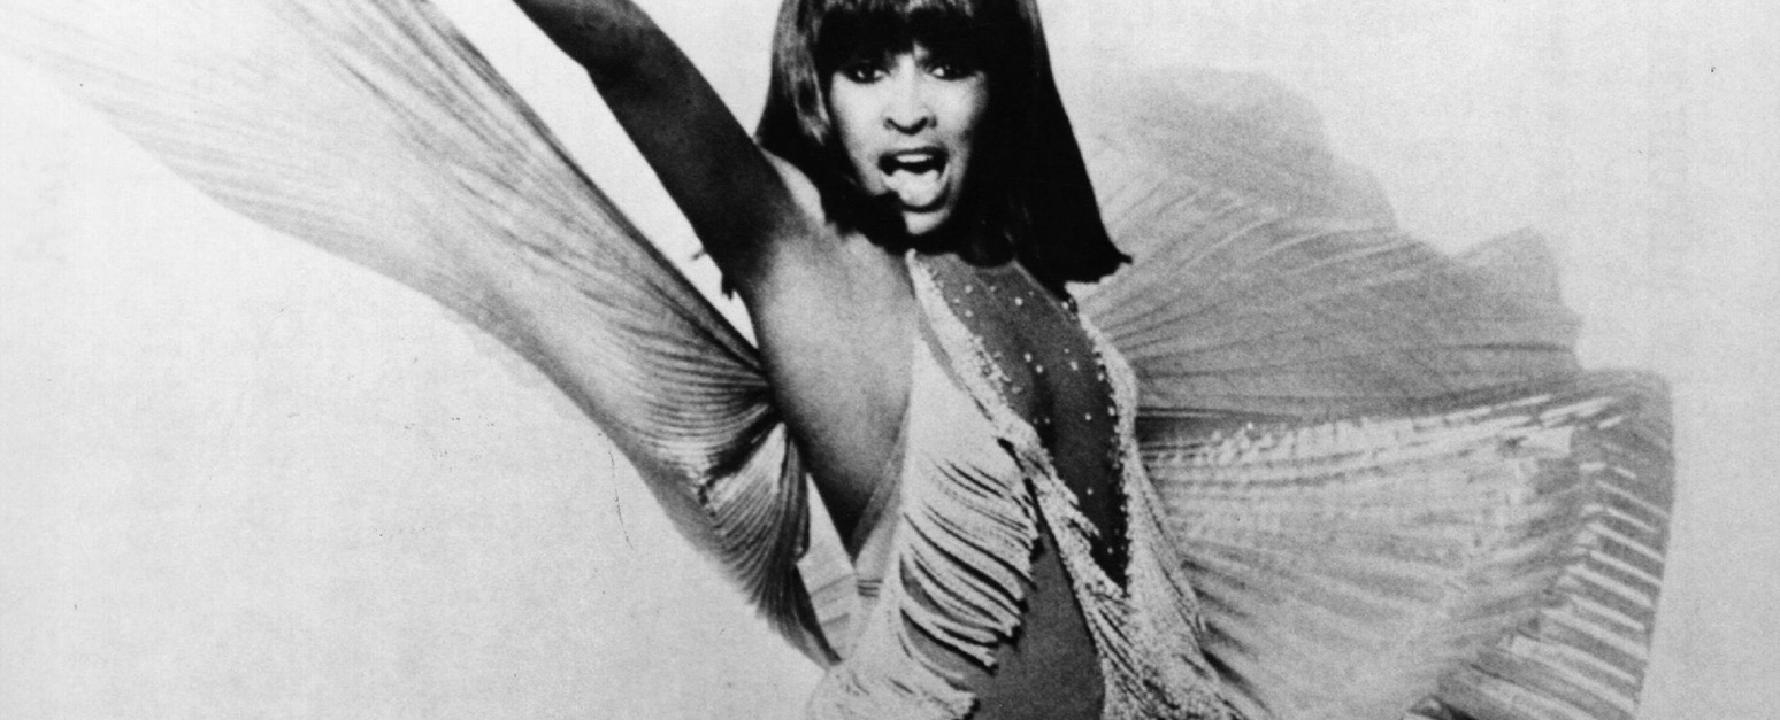 Fotografía promocional de Tina Turner